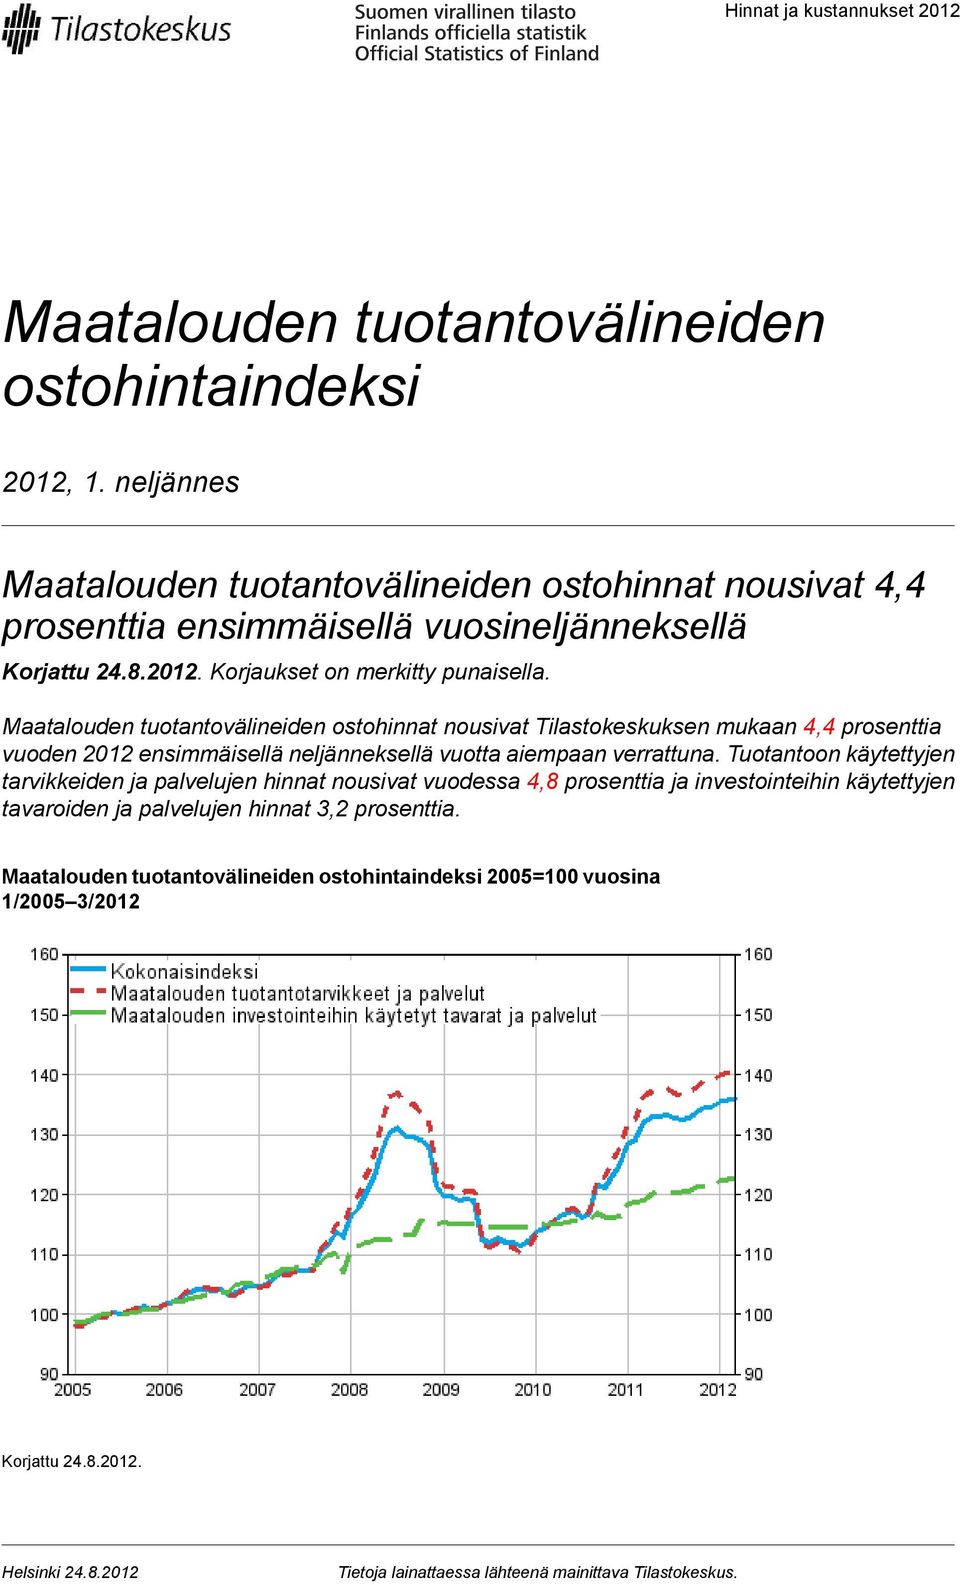 Maatalouden tuotantovälineiden ostohinnat nousivat Tilastokeskuksen mukaan 4,4 prosenttia vuoden 2012 ensimmäisellä neljänneksellä vuotta aiempaan verrattuna.